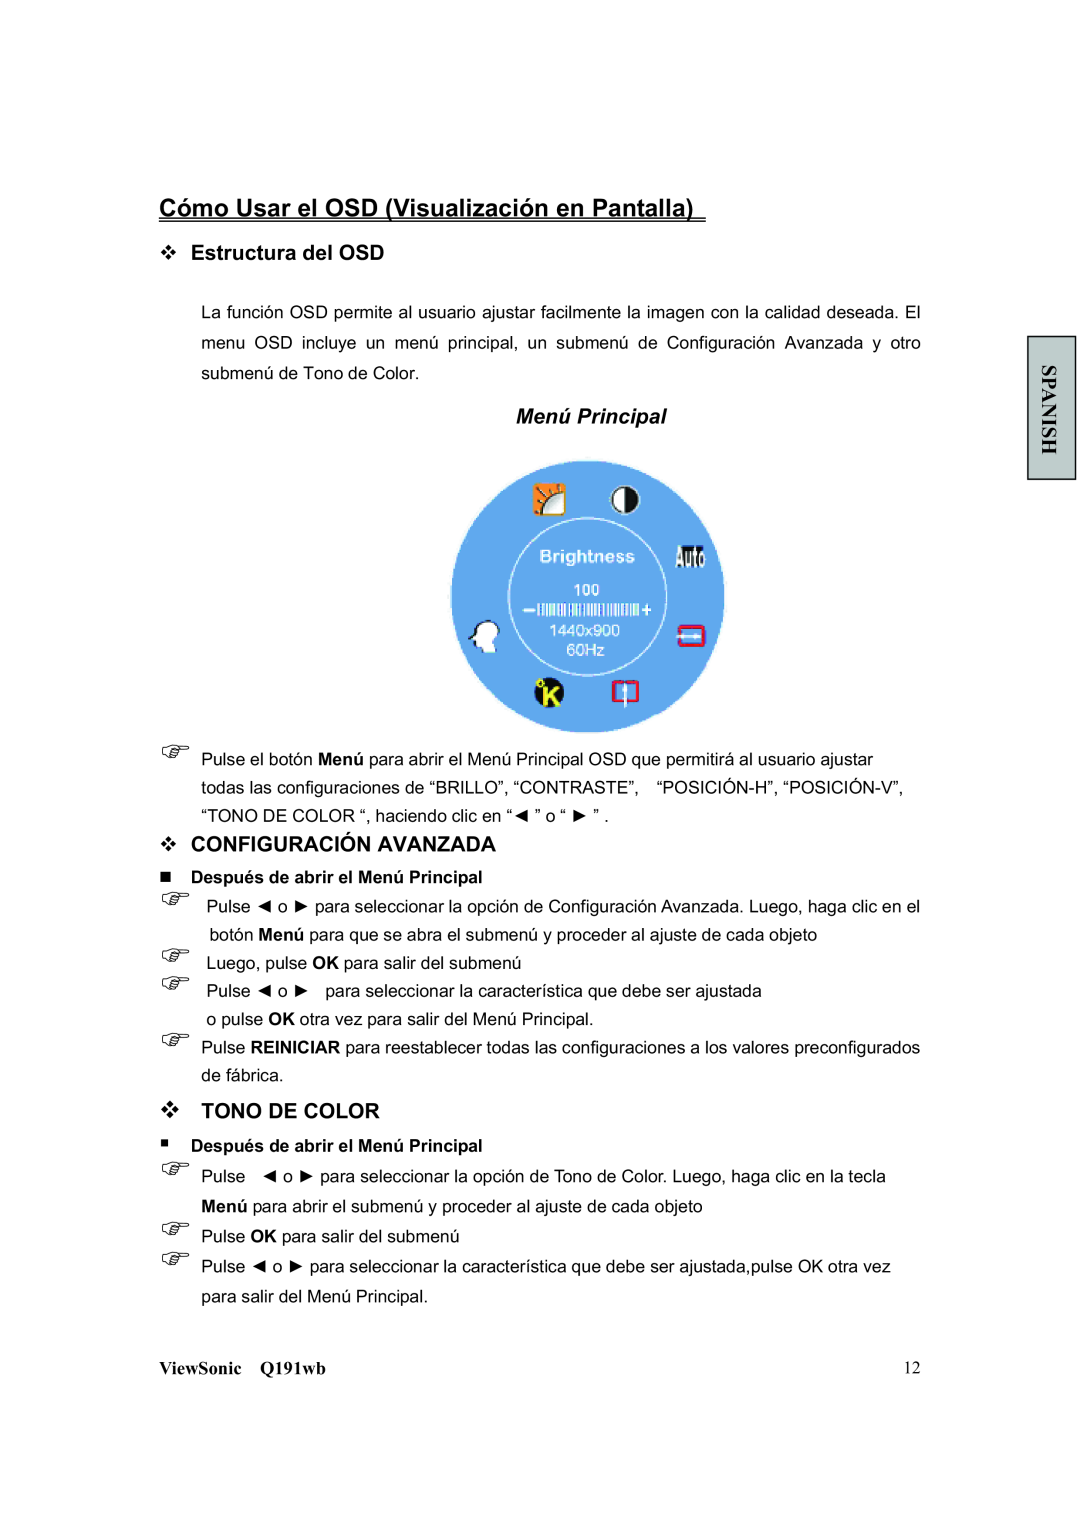 ViewSonic Q191WB manual Cómo Usar el OSD Visualización en Pantalla, ™ Estructura del OSD, Menú Principal, ™ Tono De Color 